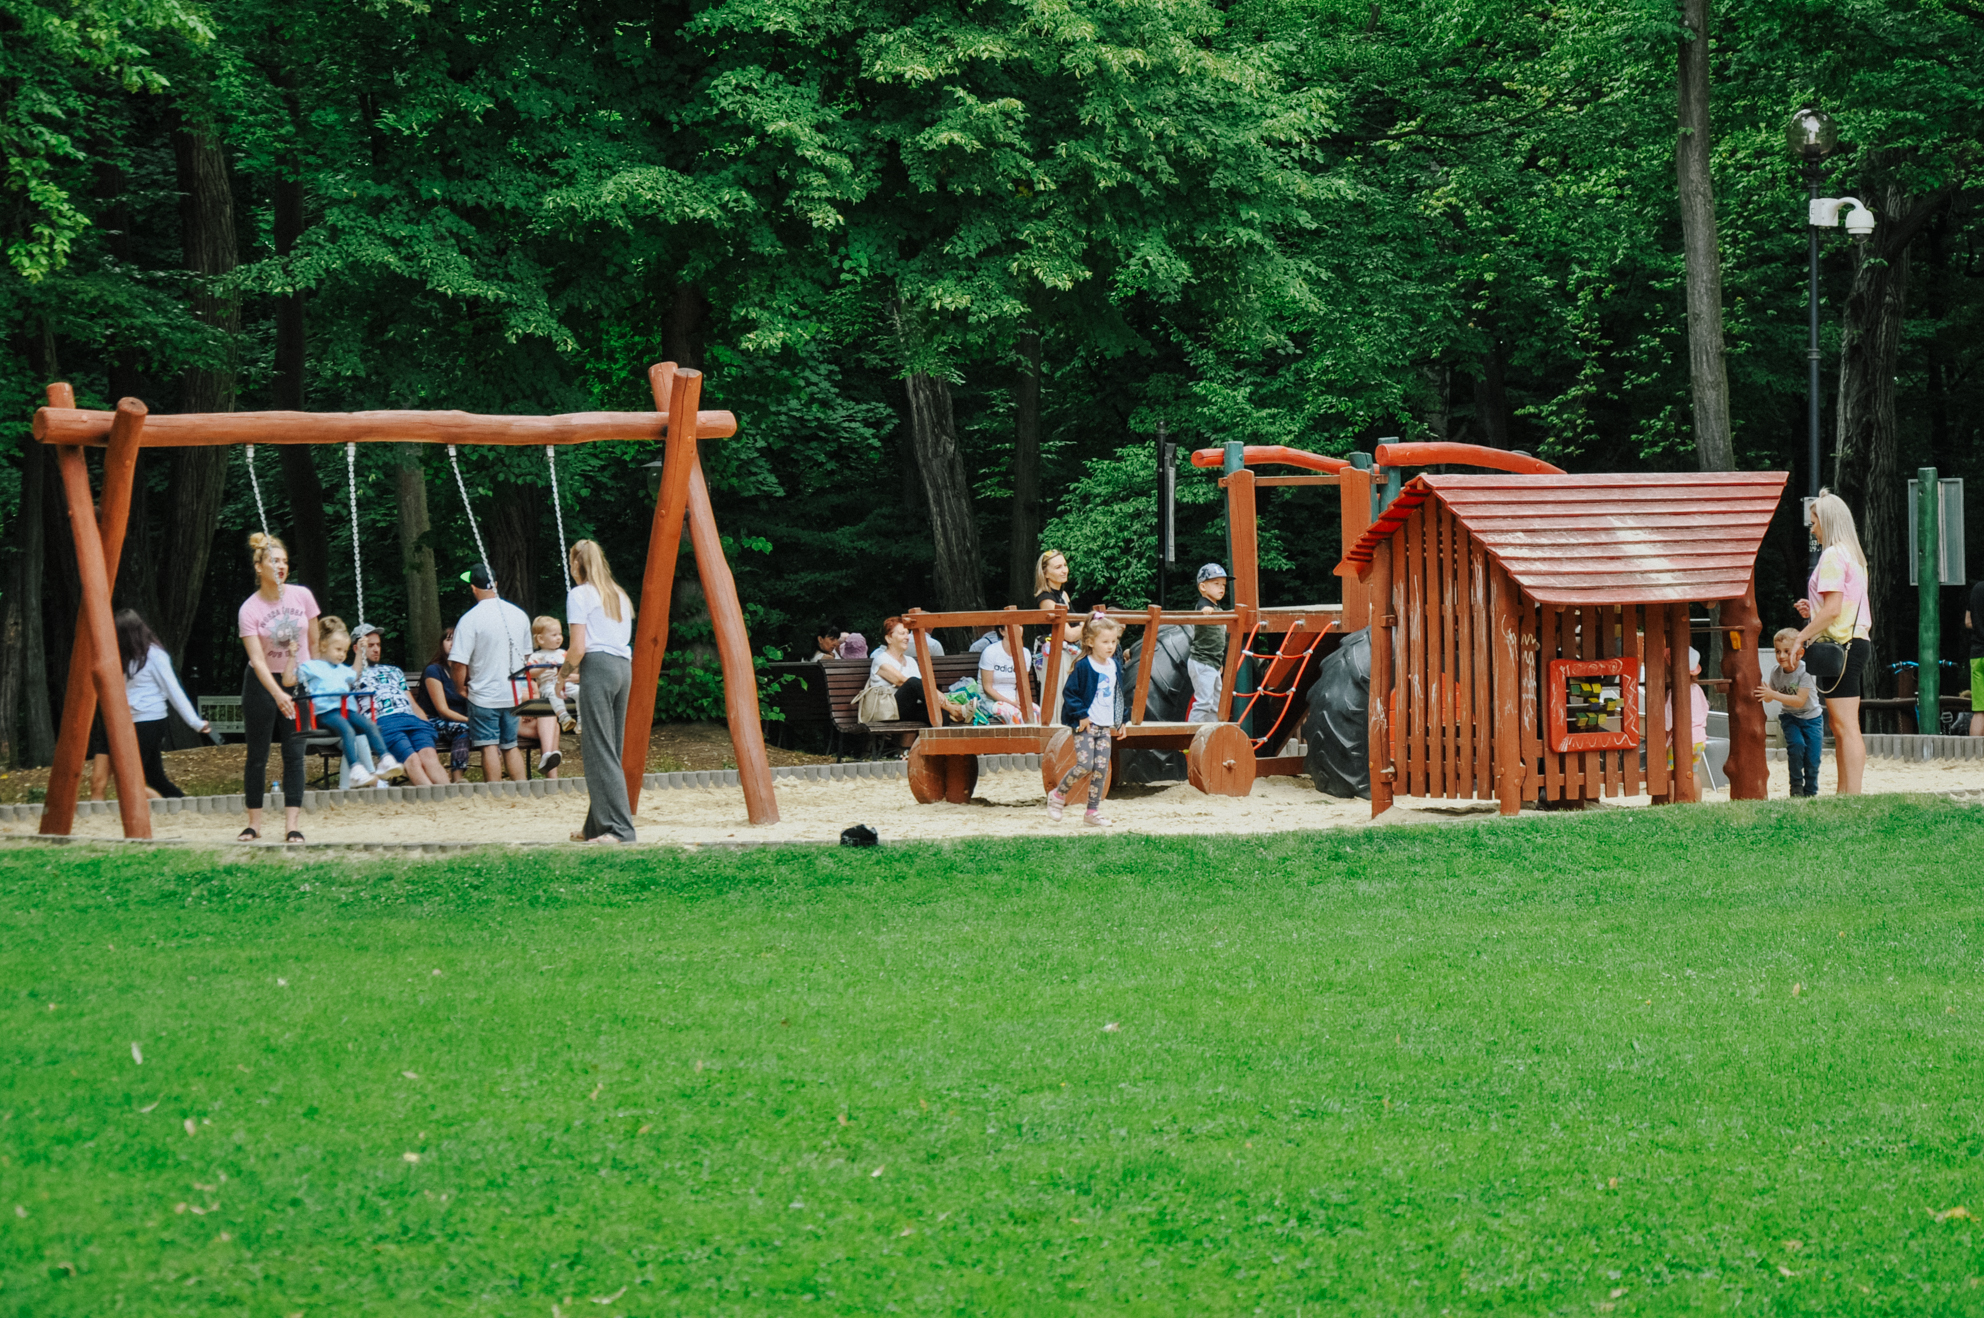 Duży plac zabaw dla dzieci. Jego część znajduje się między drzewami, osłaniając tym samym dzieci od upału 